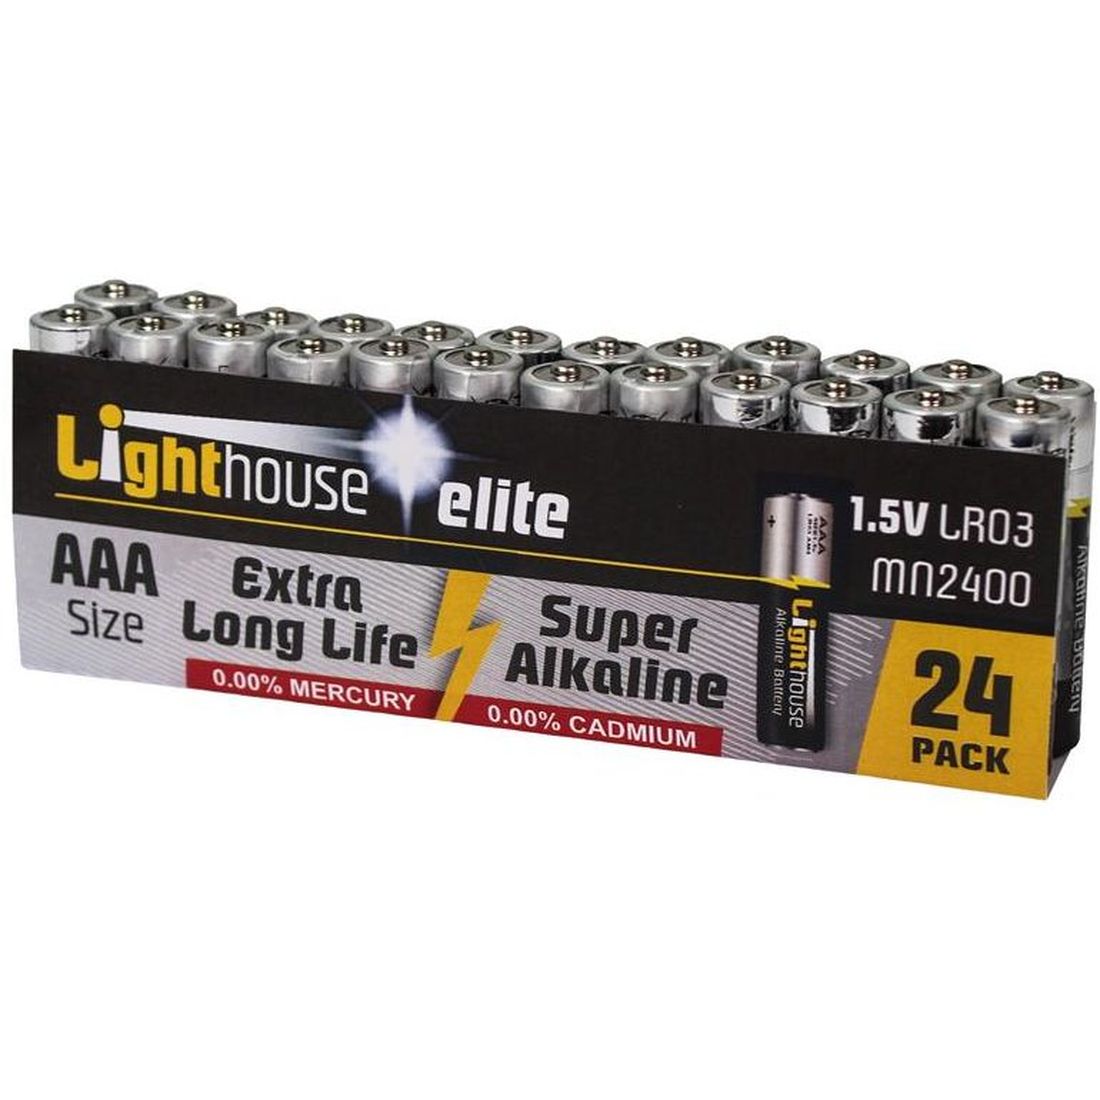 Lighthouse AAA LR03 Alkaline Batteries 1120 mAh (Pack 24)                                  